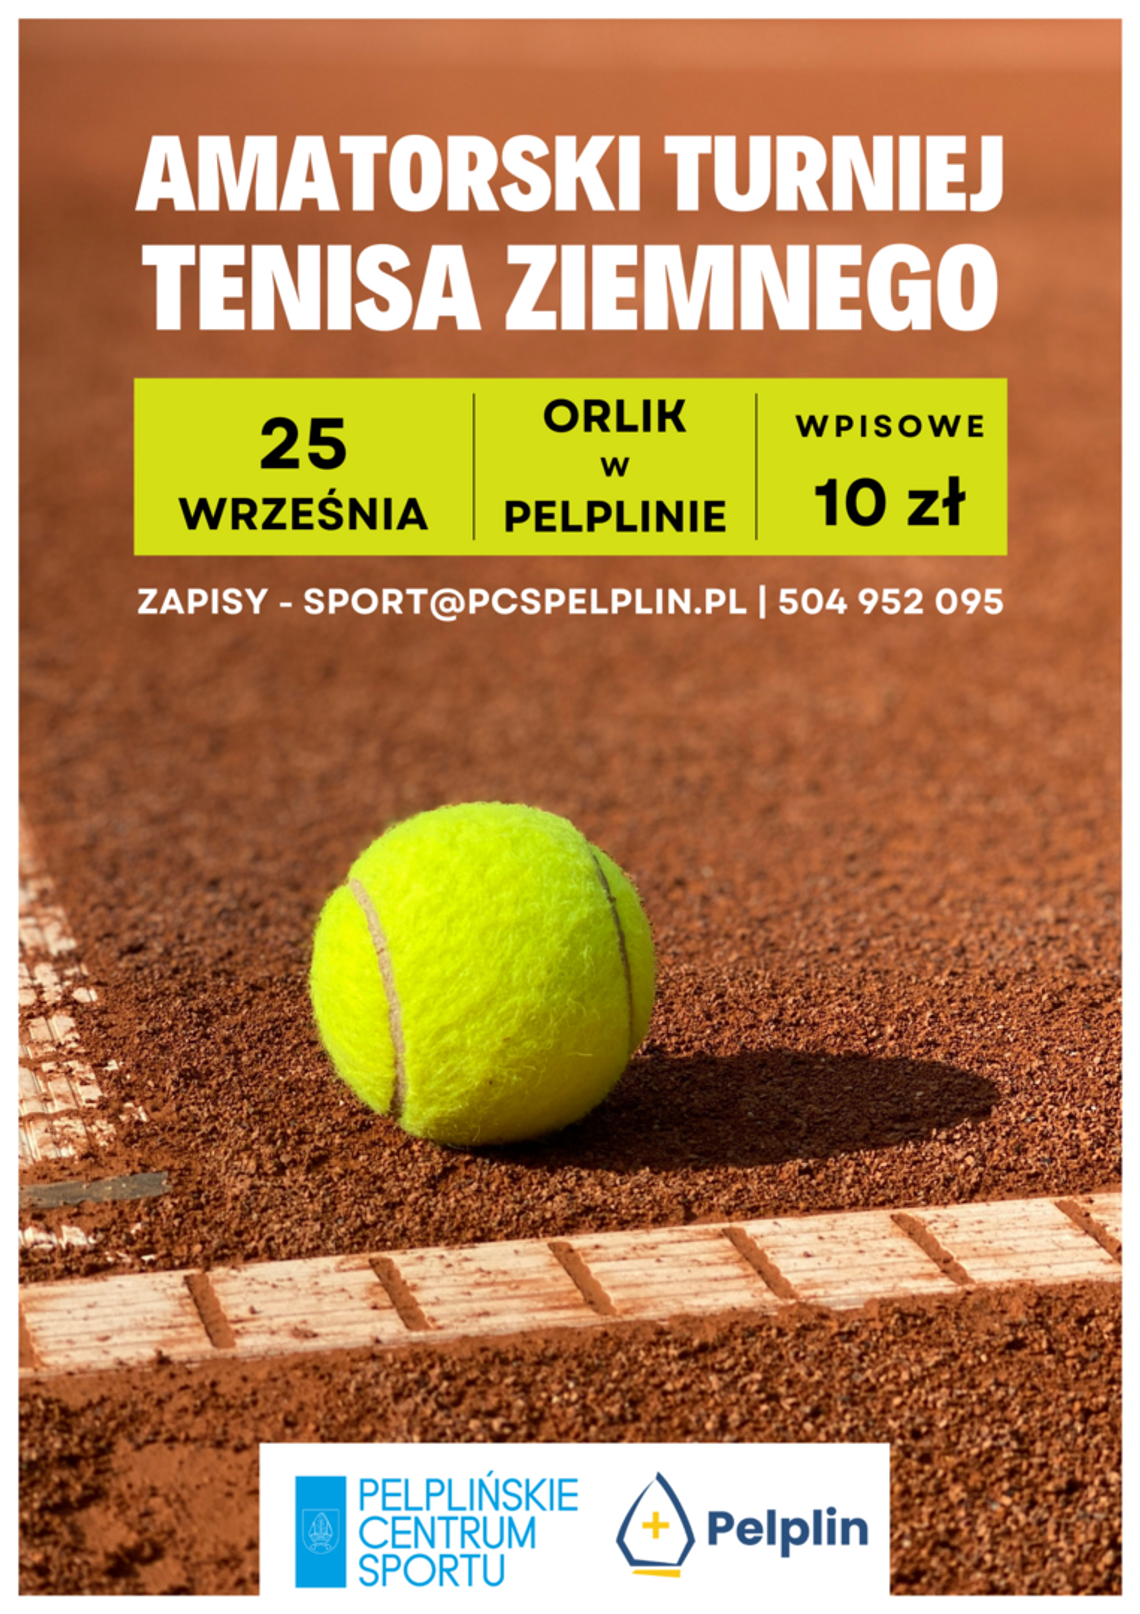 Pelplin: Amatorski Turniej Tenisa Ziemnego już 25 września